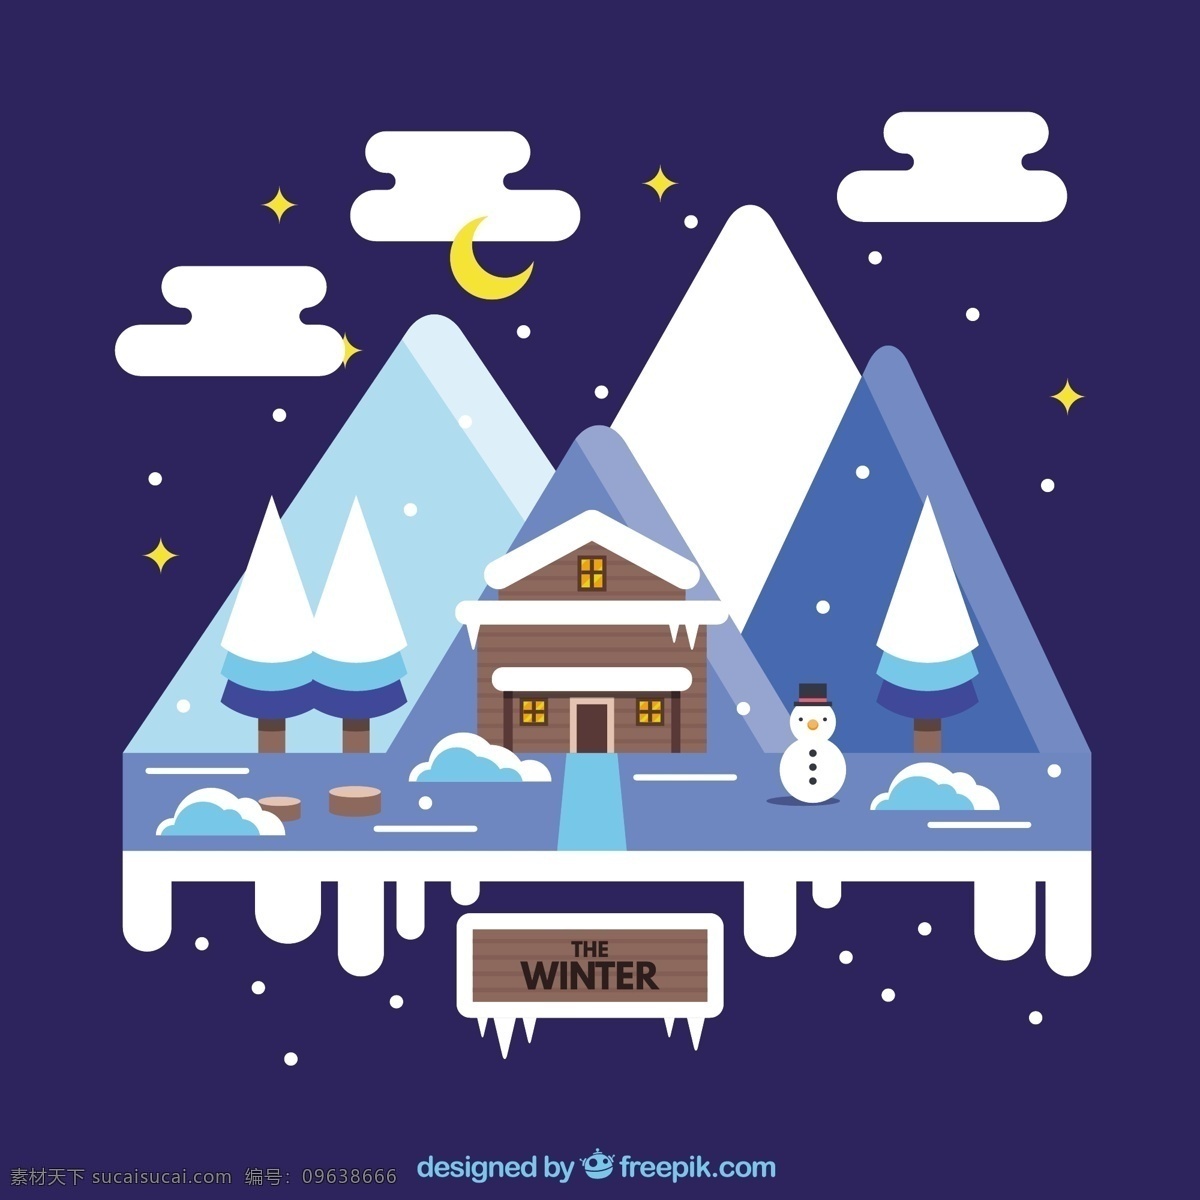 冬季景观 圣诞节 新年 房子 天性快乐 新的一年里 雪 圣诞快乐 冬天快乐 景观 庆祝活动 新的节日 堆雪人 山 年 节日快乐 节日的季节 蓝色